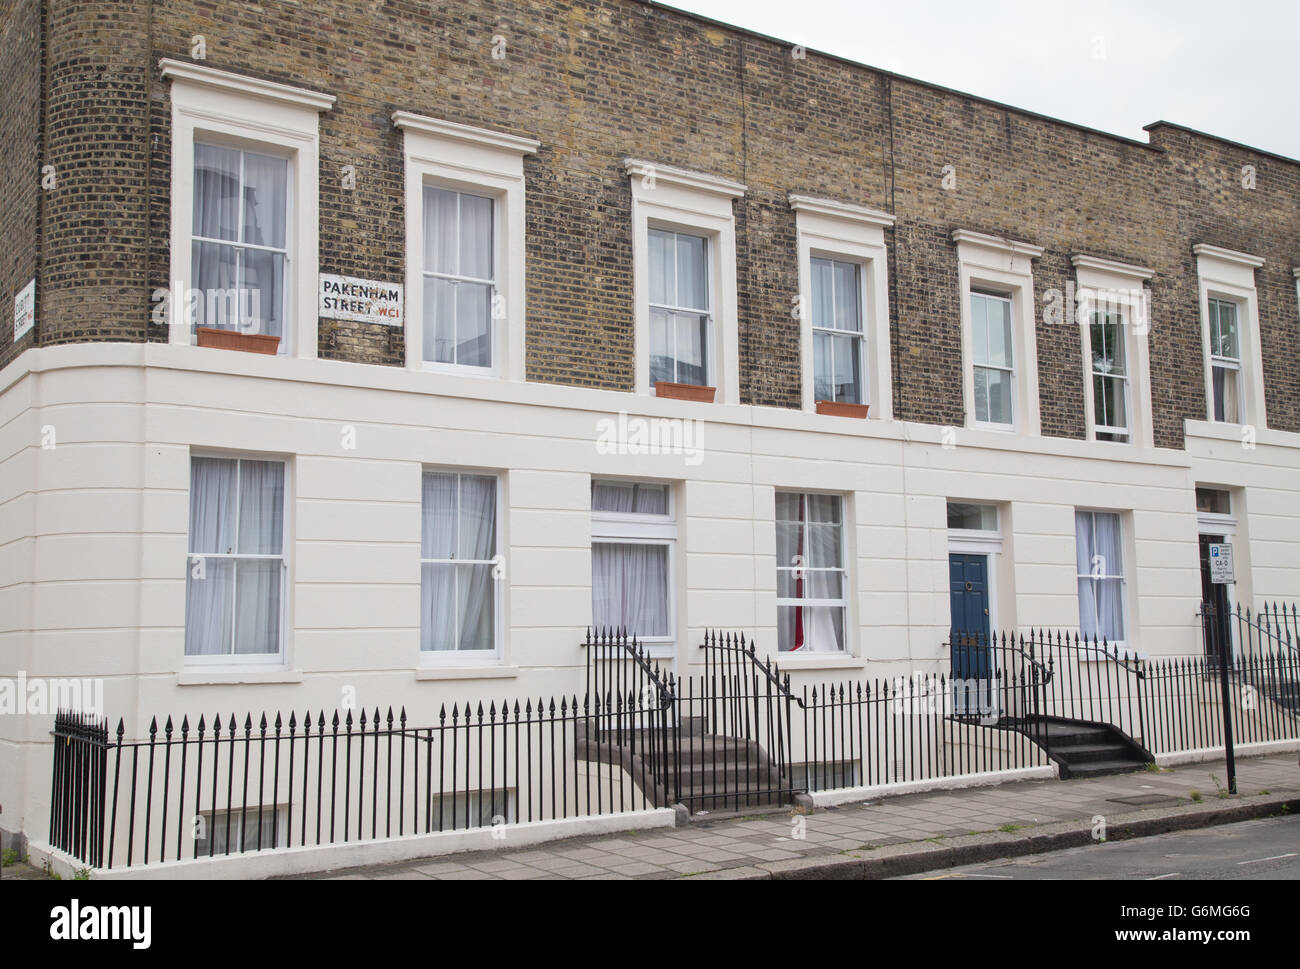 Inizio a schiera in stile vittoriano su facciate Pakenham Street, Bloomsbury, Londra WC1 Foto Stock